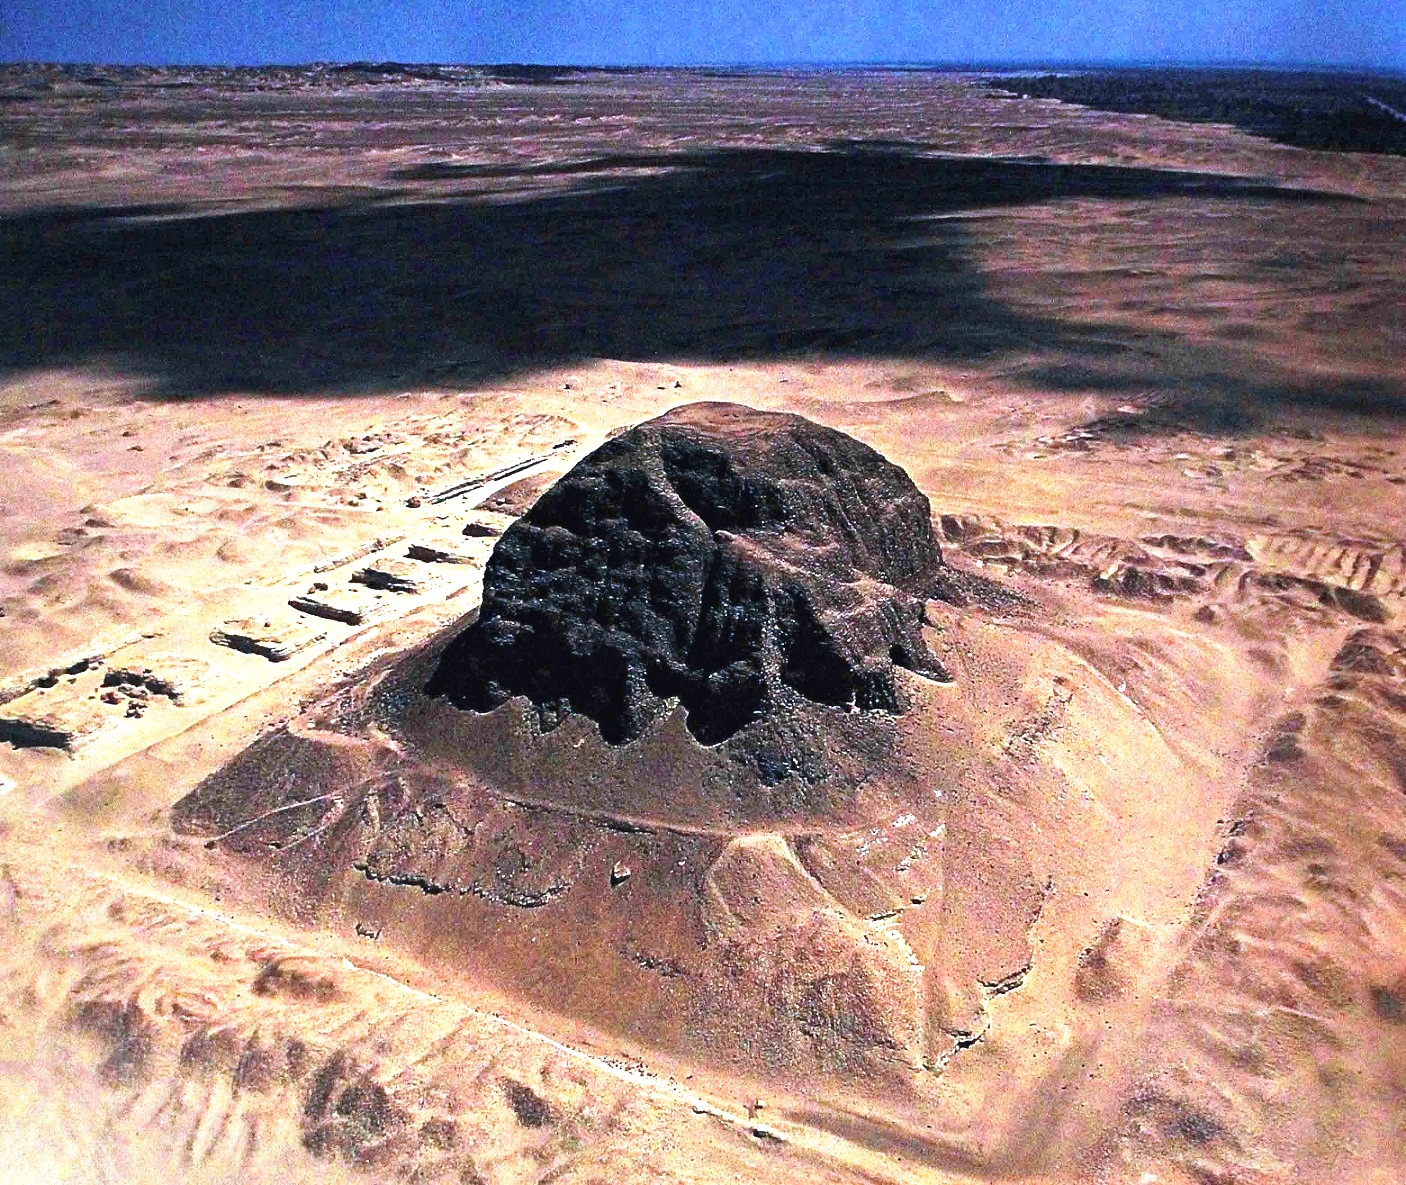 пирамиды египта фото со спутника